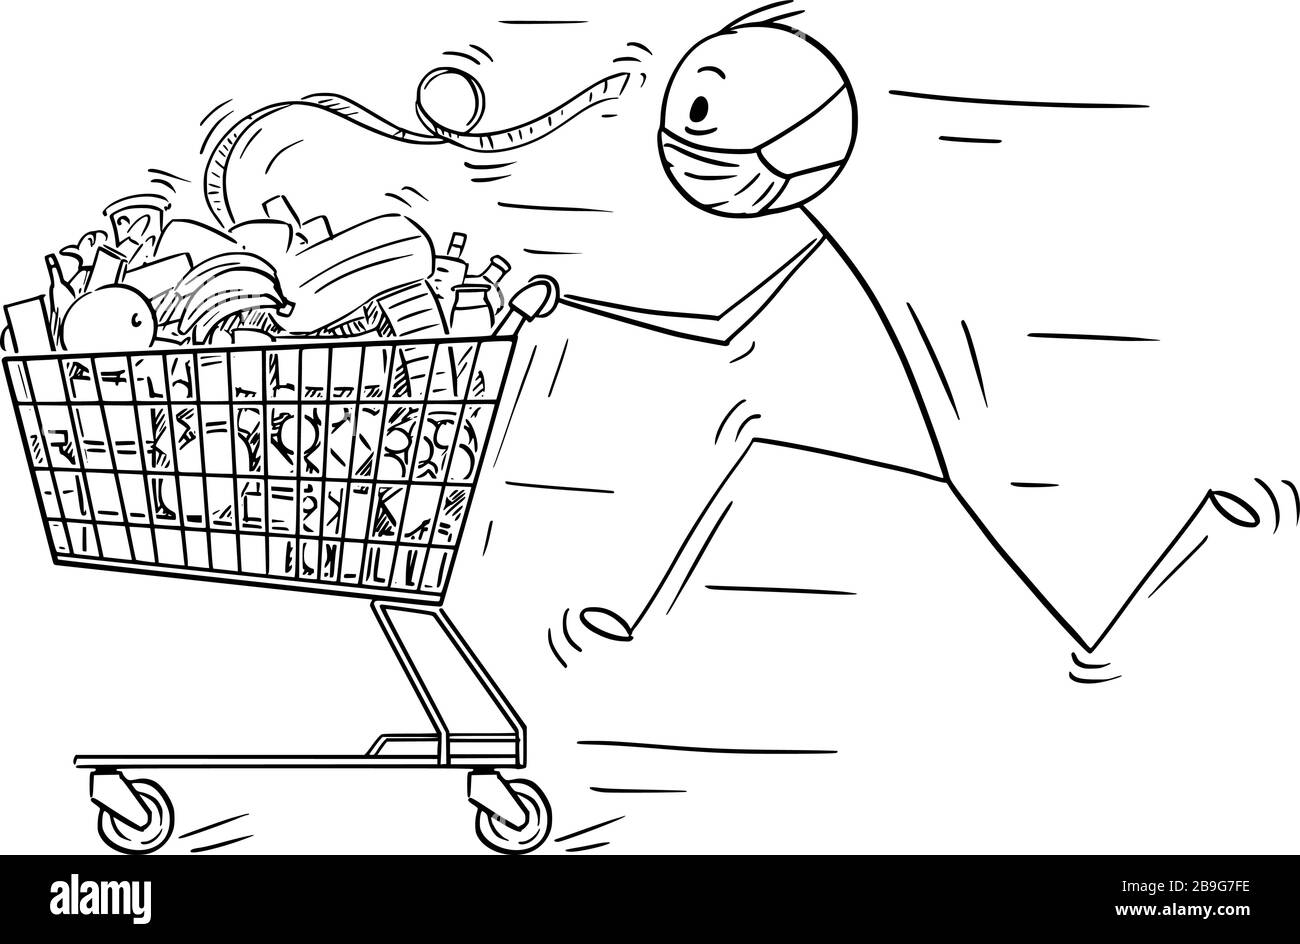 Figura di bastone cartoon vettoriale disegno illustrazione concettuale di uomo che indossa maschera facciale corsa e spingere carrello con cibo da negozio di alimentari o supermercato. Concetto di epidemia di coronavirus COVID-19. Illustrazione Vettoriale